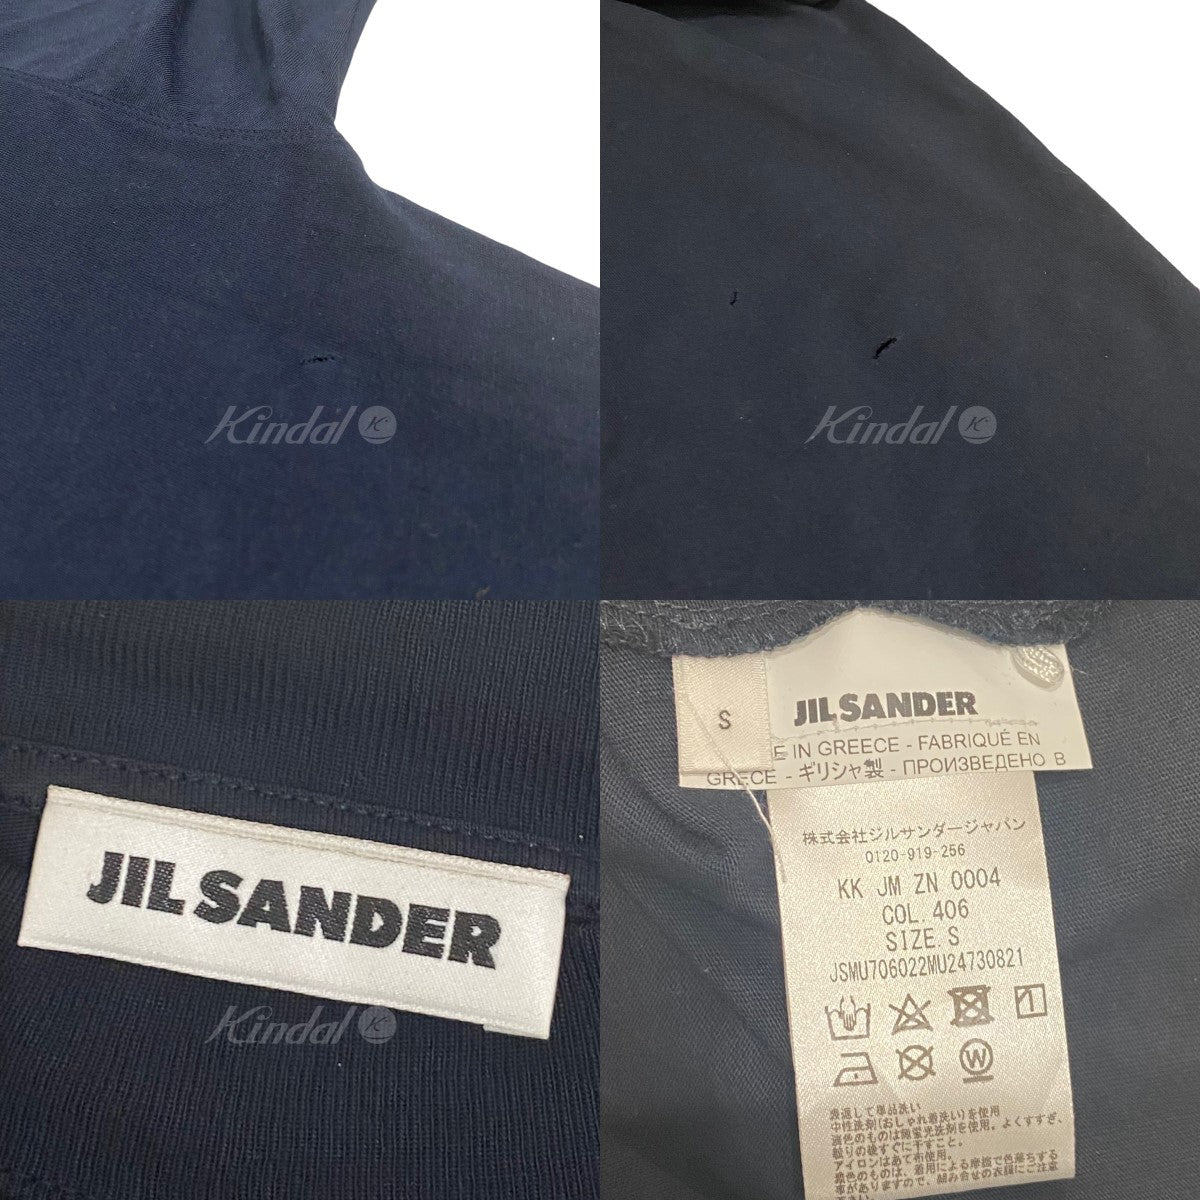 JIL SANDER(ジルサンダー) モックネックTシャツ JSMU706022MU24730821 ...